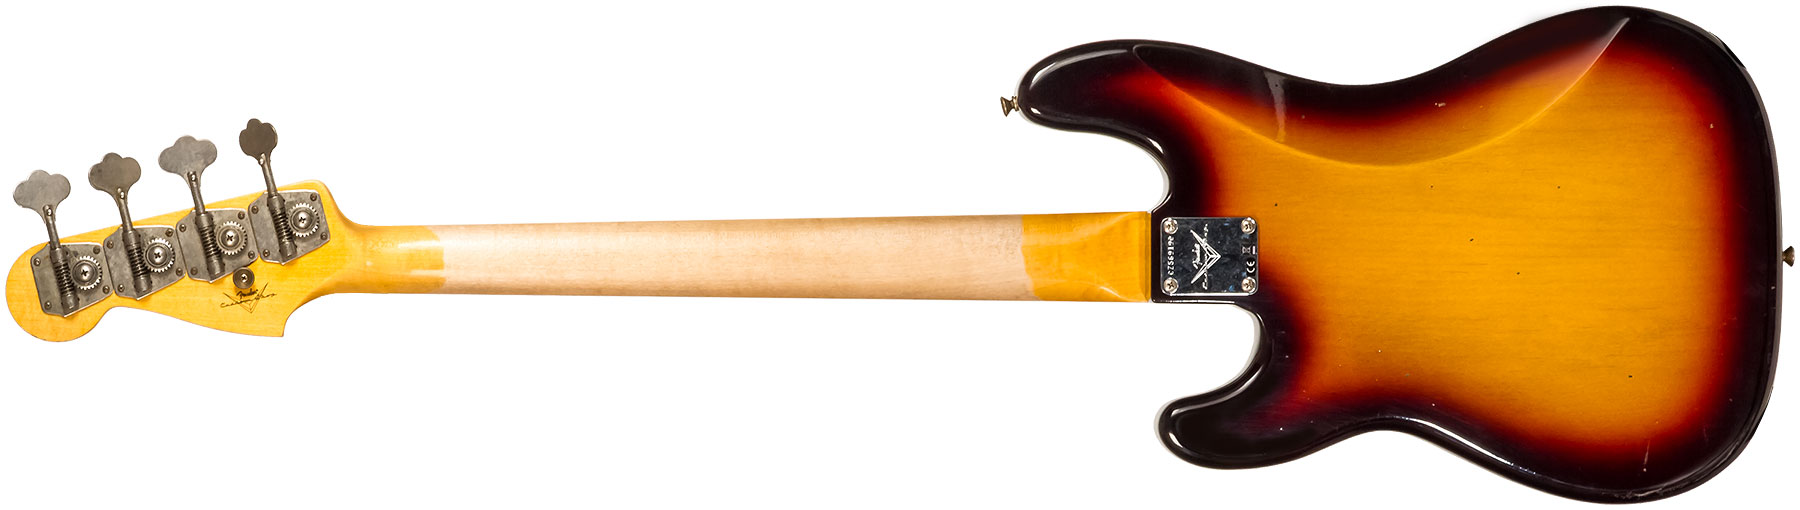 Fender Custom Shop Precision Bass 1963 Rw #cz56919 - Journeyman Relic 3-color Sunburst - Bajo eléctrico de cuerpo sólido - Variation 1